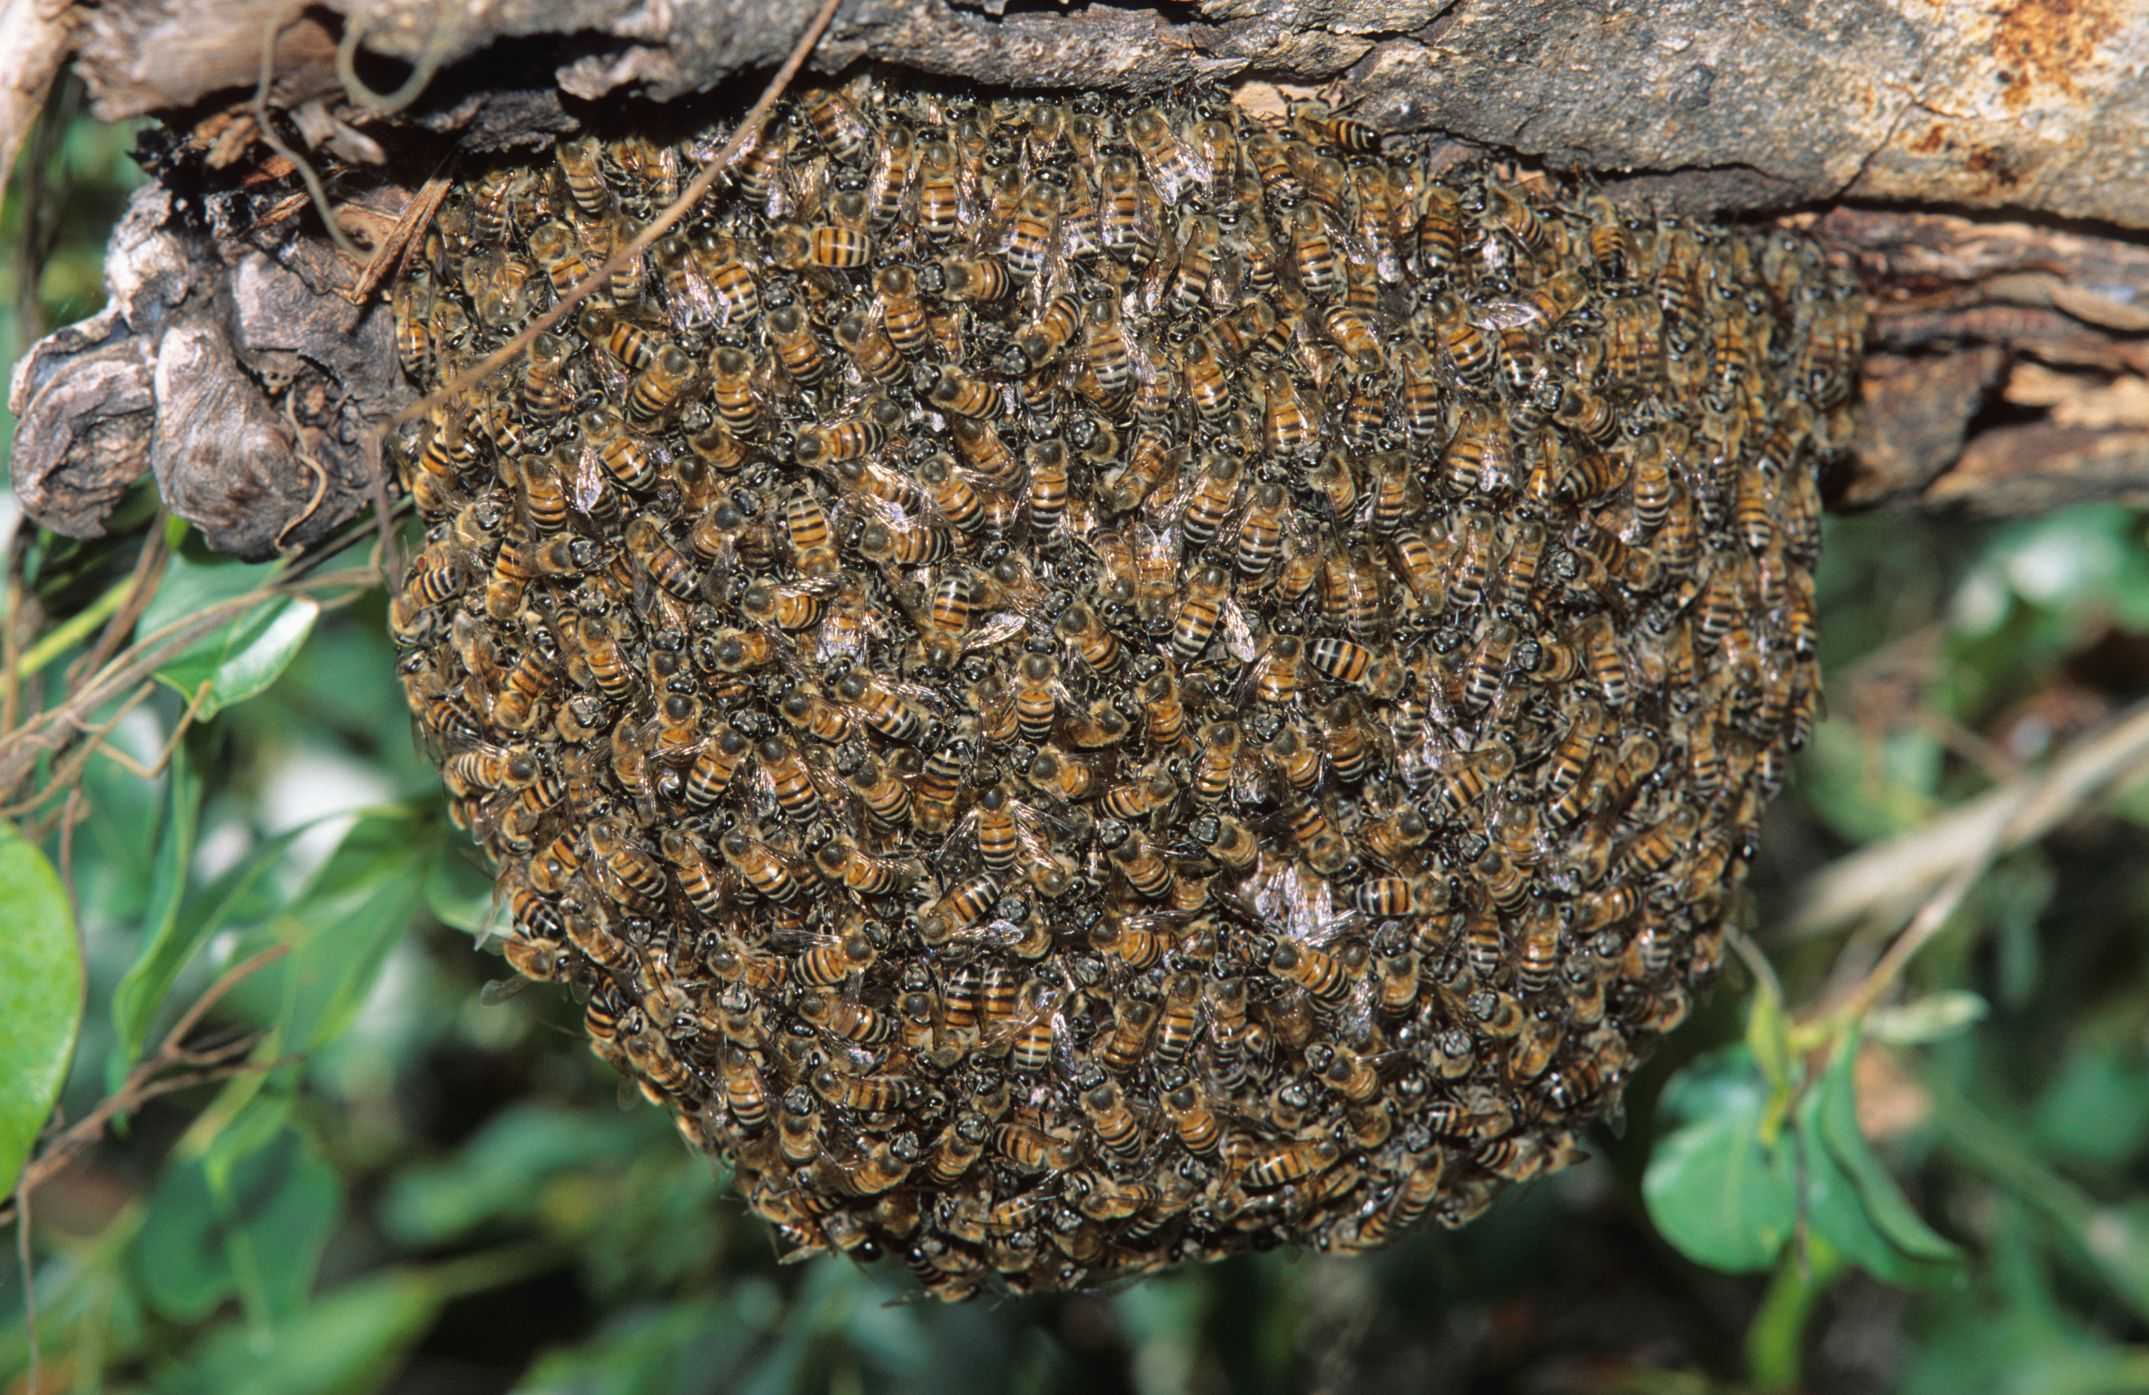 Причины, признаки и способы борьбы с воровством пчел